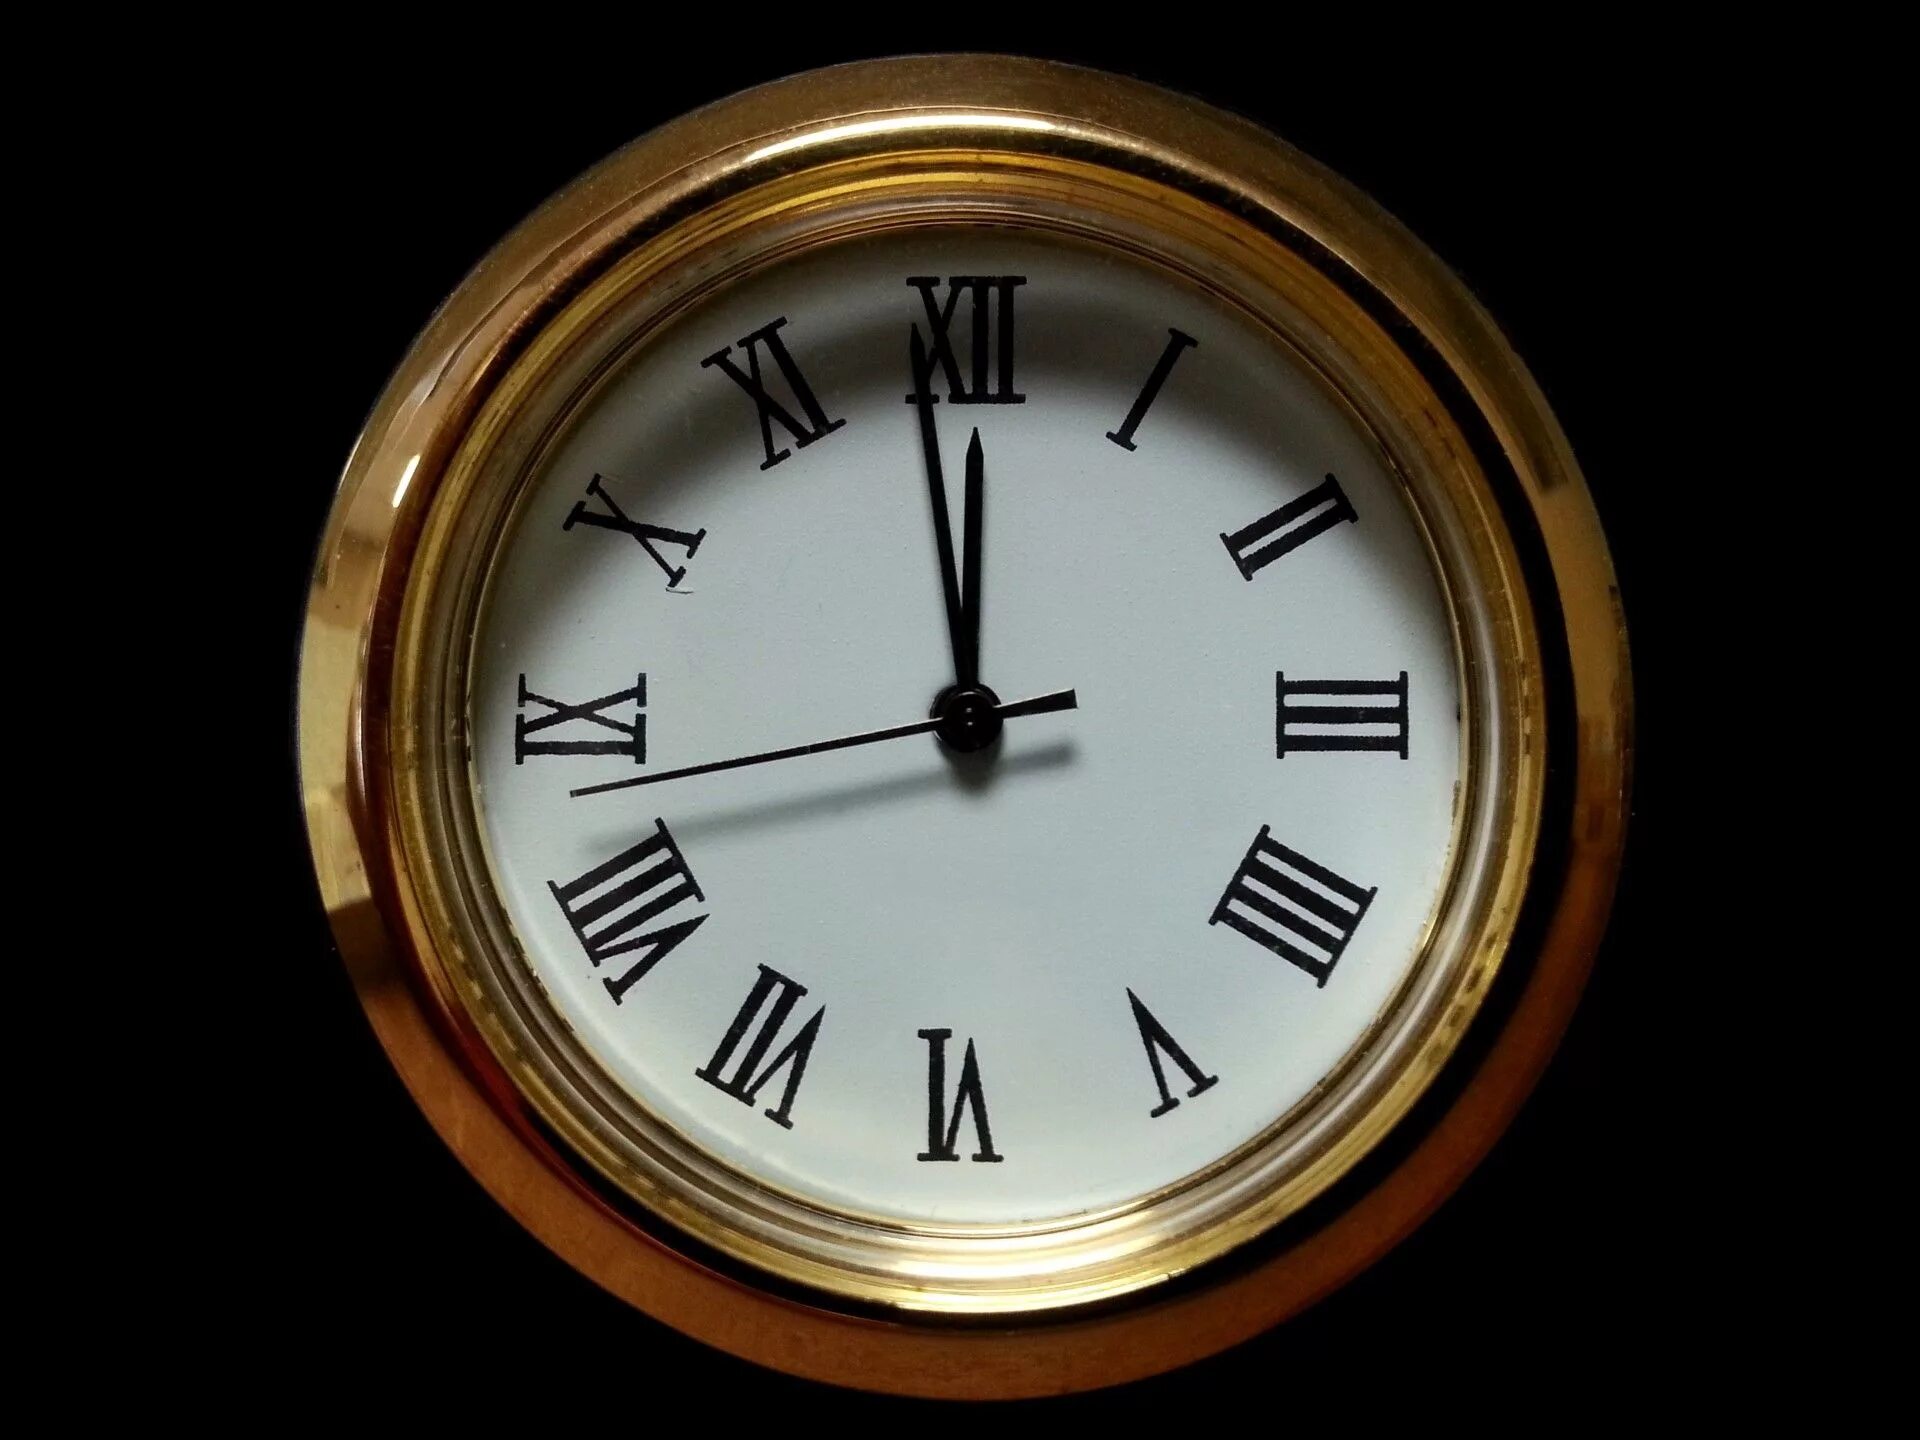 Старинные часы. Часы полночь. Часы показывают полночь. Изображение часов. Картинка часы 12